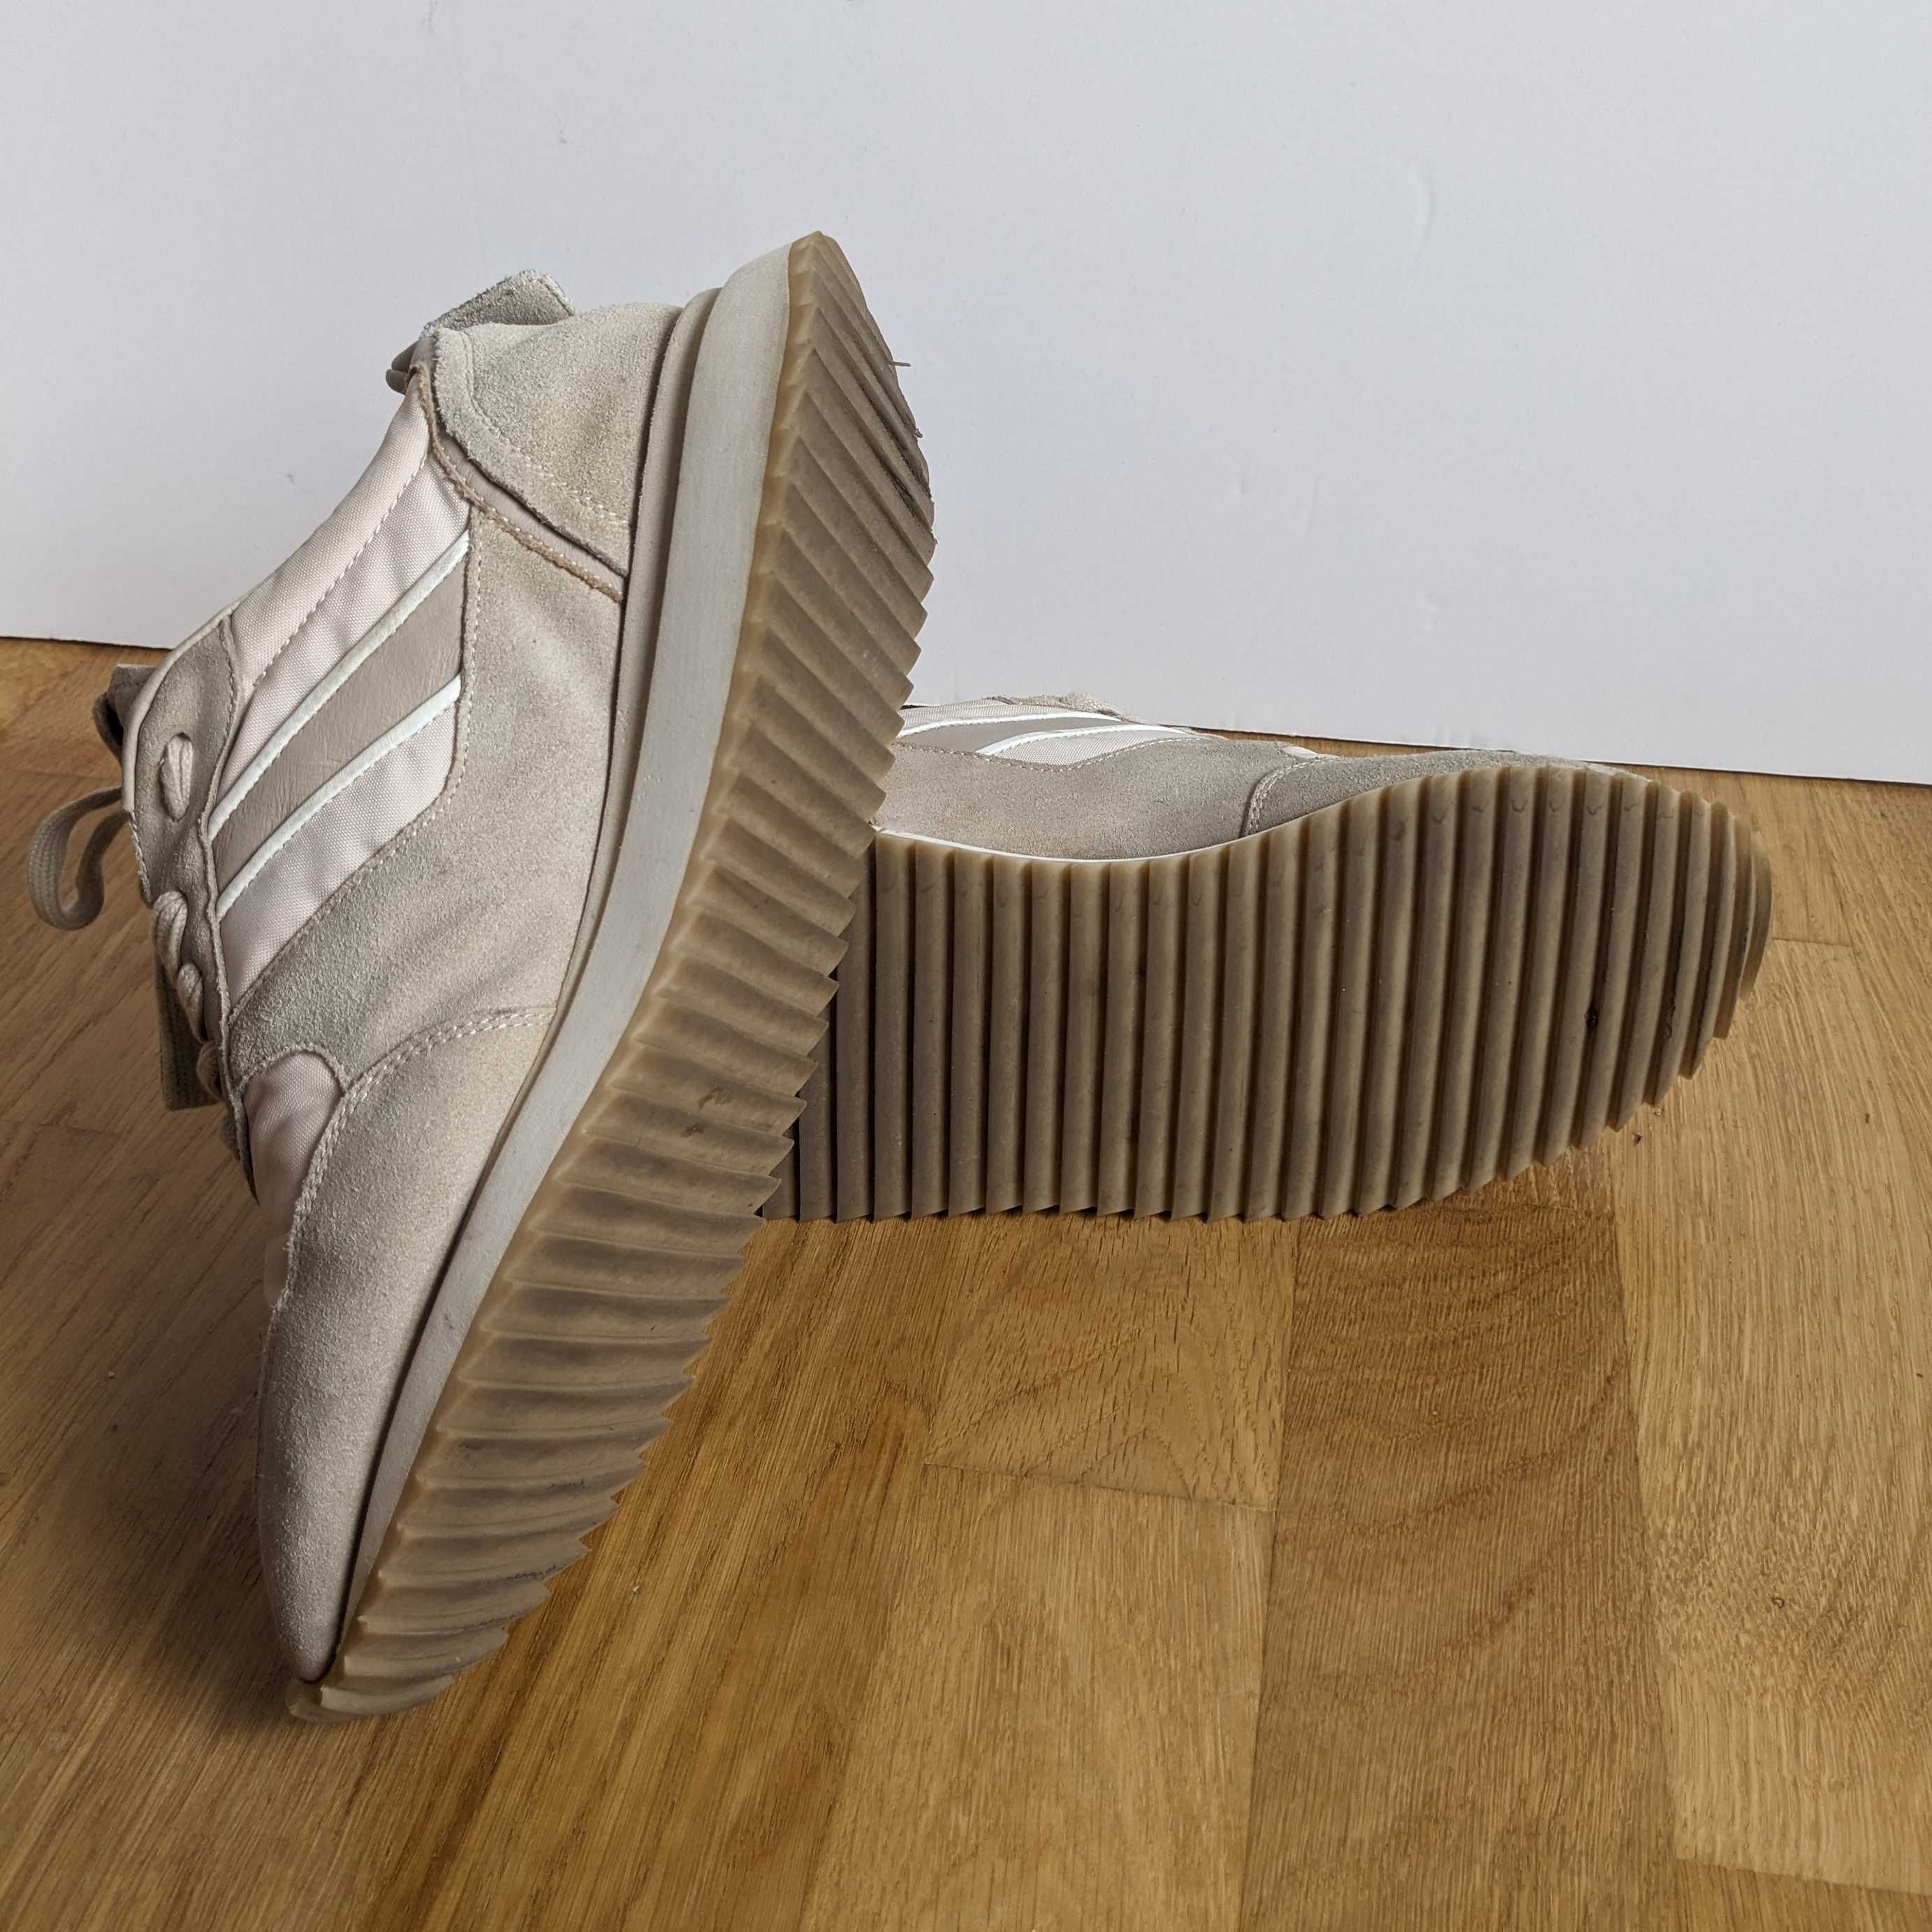 Оригінальні кросівки Beige Copenhagen Studios Sneakers Cph460